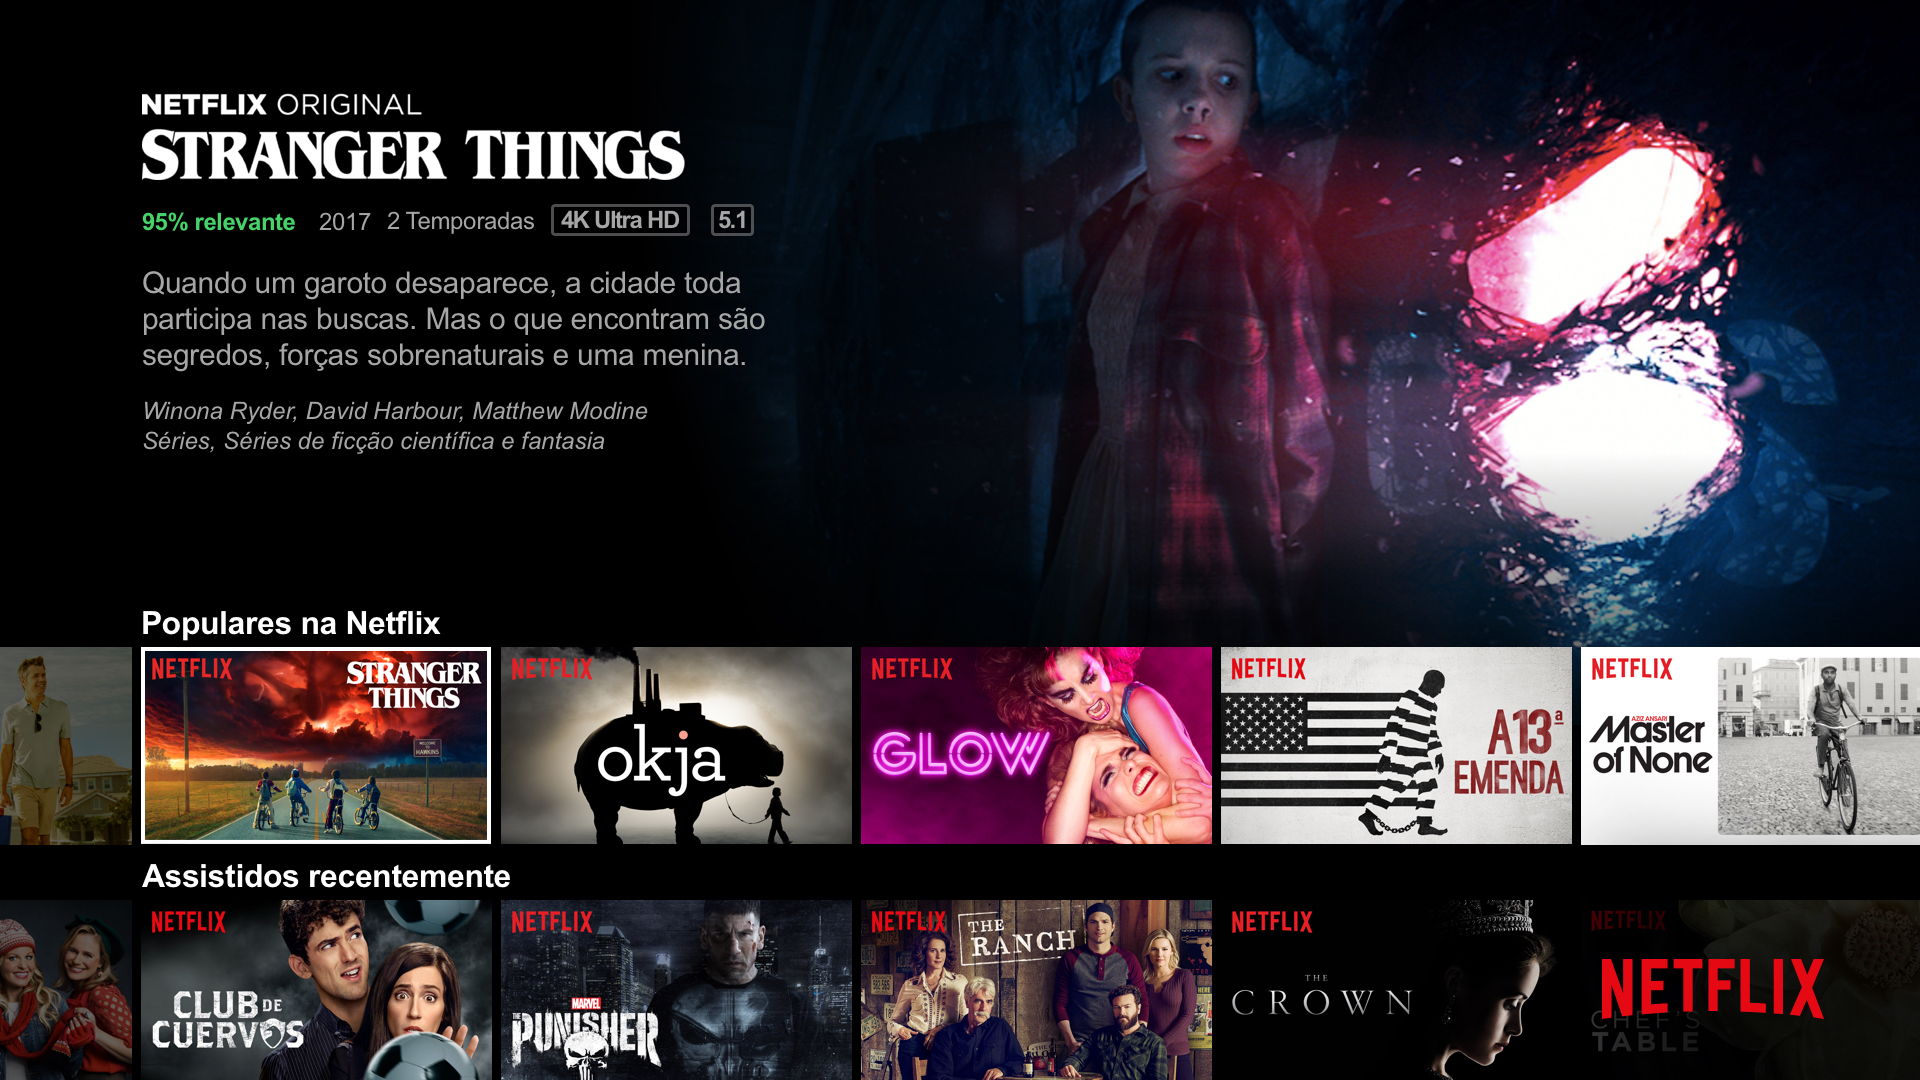 Netflix sai do ar e avisa seus consumidores com bom humor - Reclame Aqui  Notícias